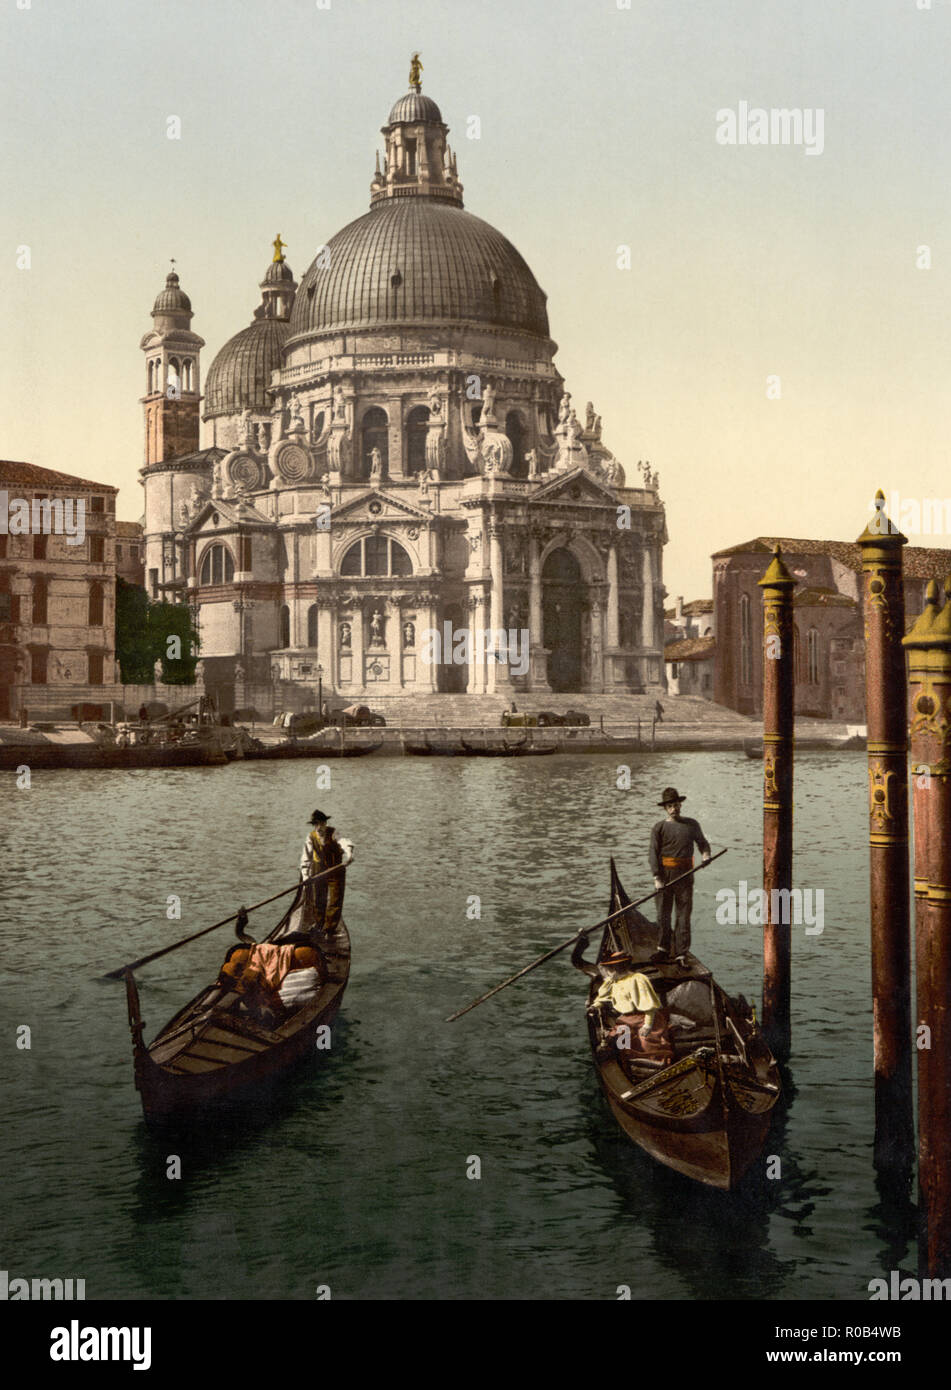 Kirche von Salute, Venedig, Italien, Photochrom Print, Detroit Publishing Company, 1900 Stockfoto